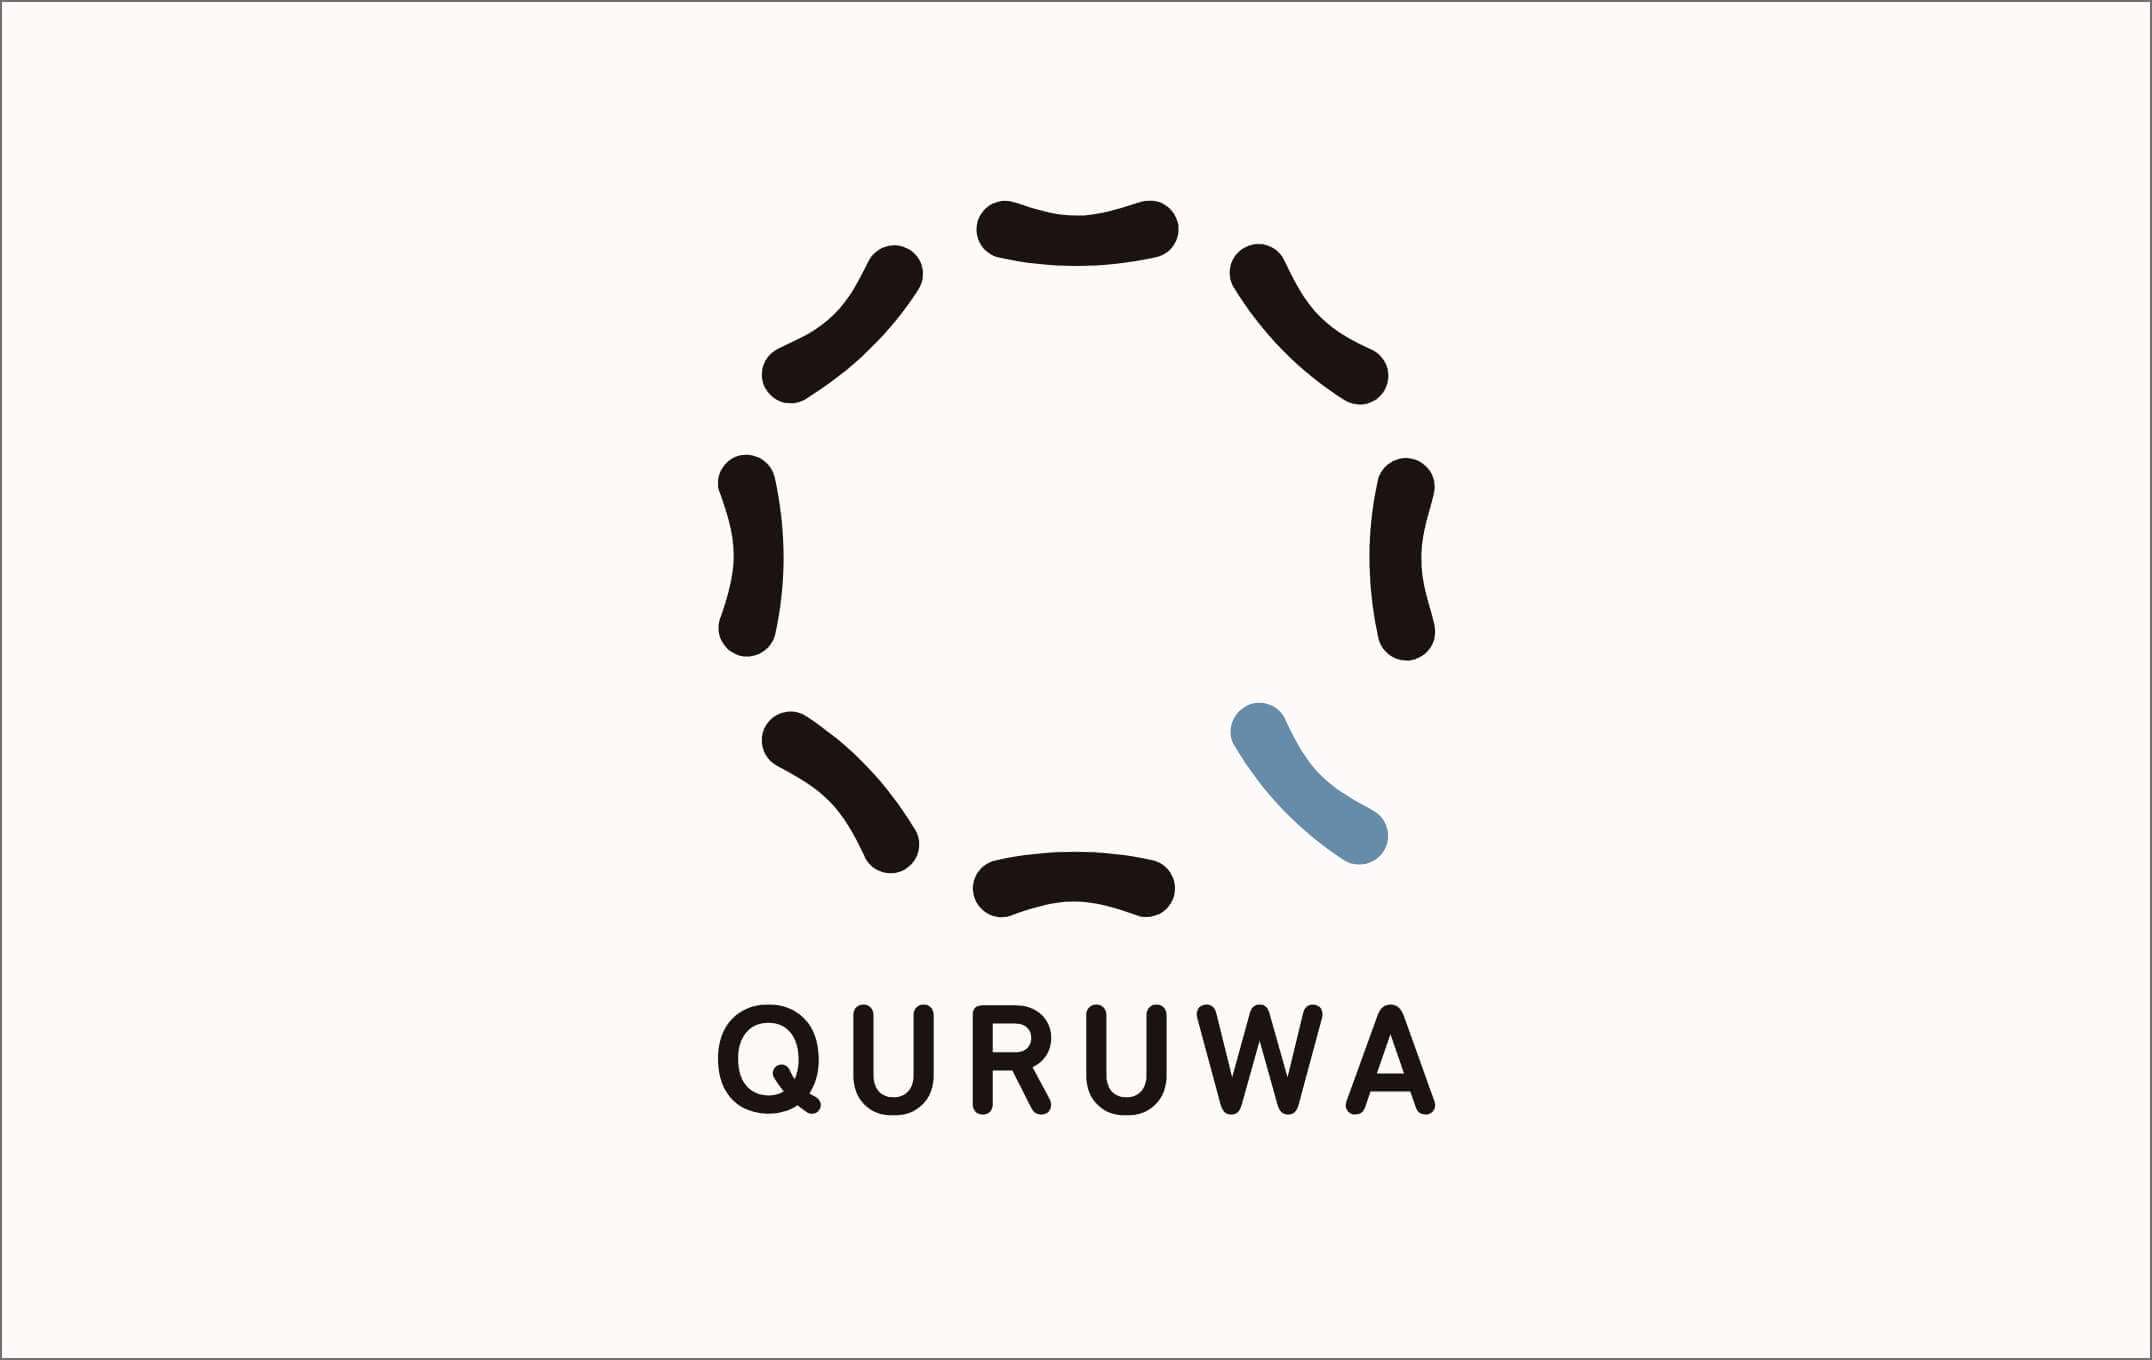 QURUWA